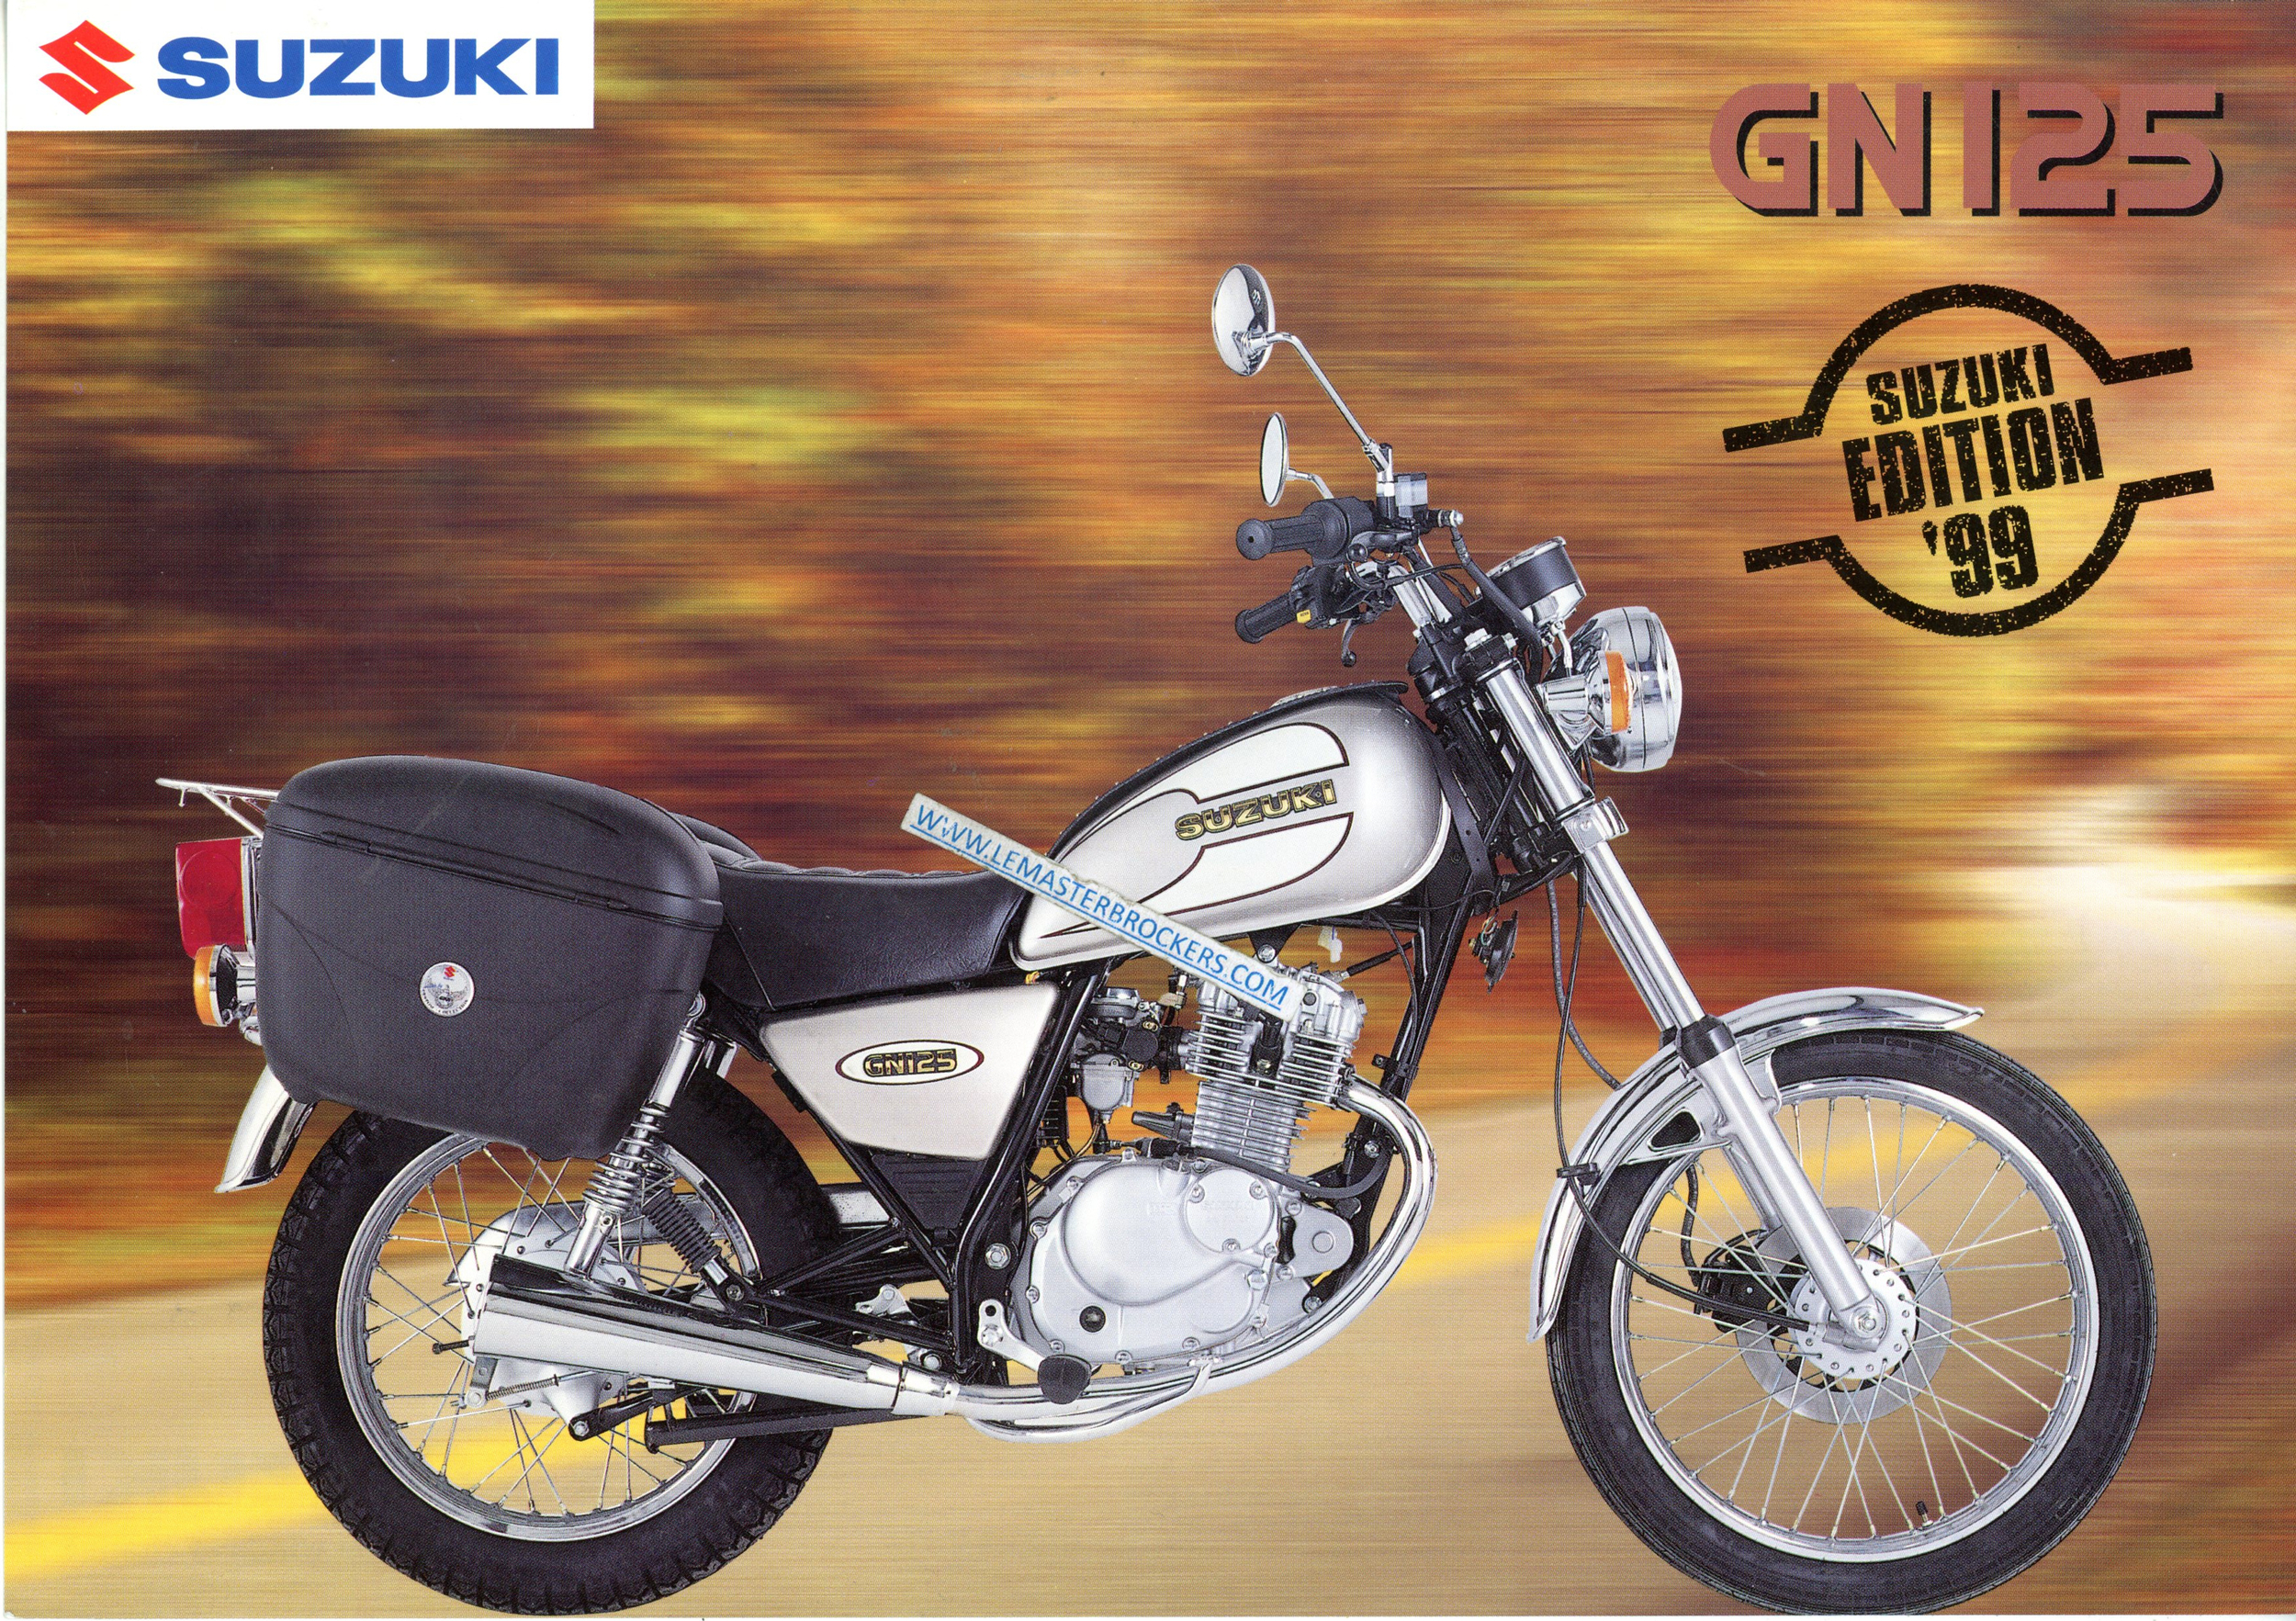 BROCHURE MOTO SUZUKI GN125 1999